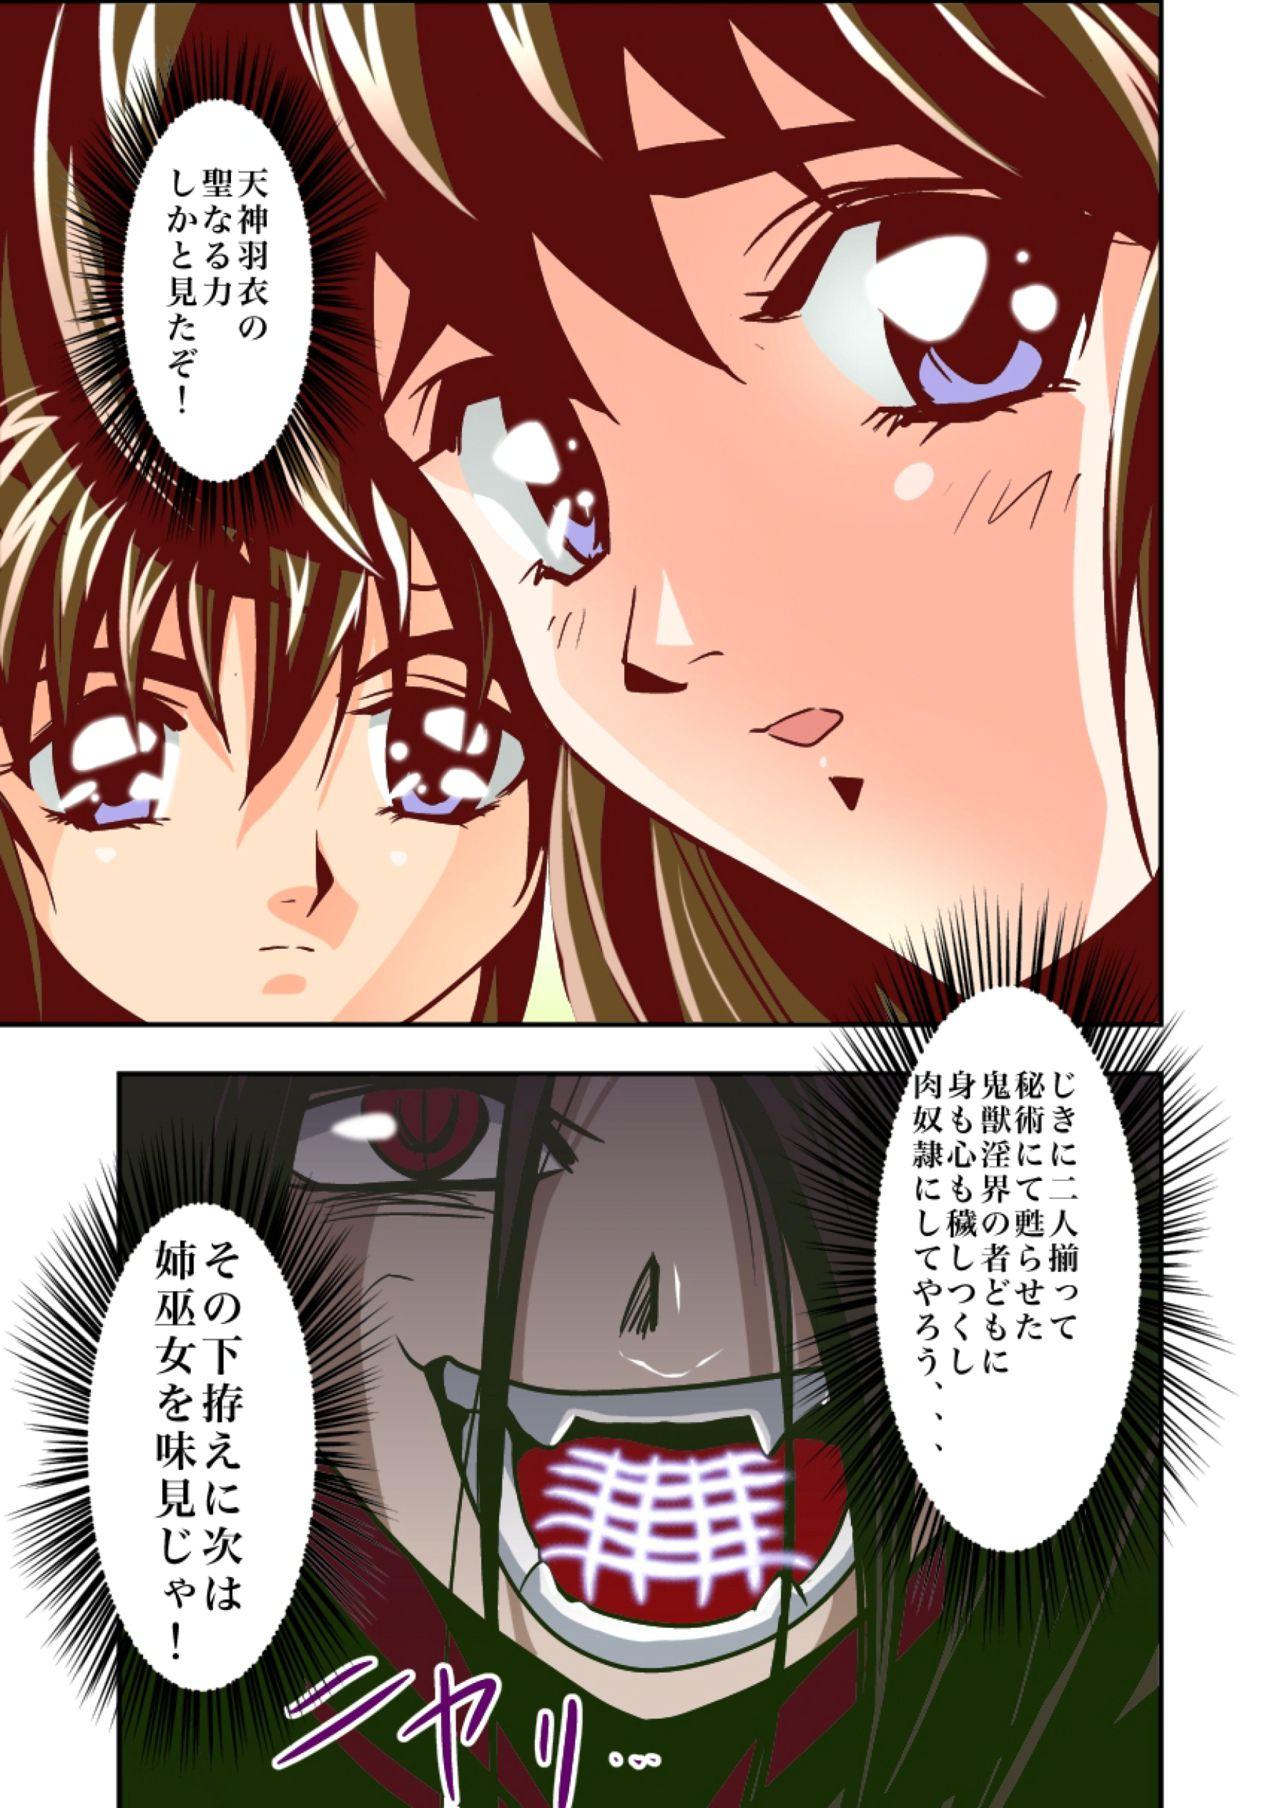 Hot Sluts FallenXXangeL2 Ingyaku no Mai Gekan Full Color - Twin angels Closeups - Page 33